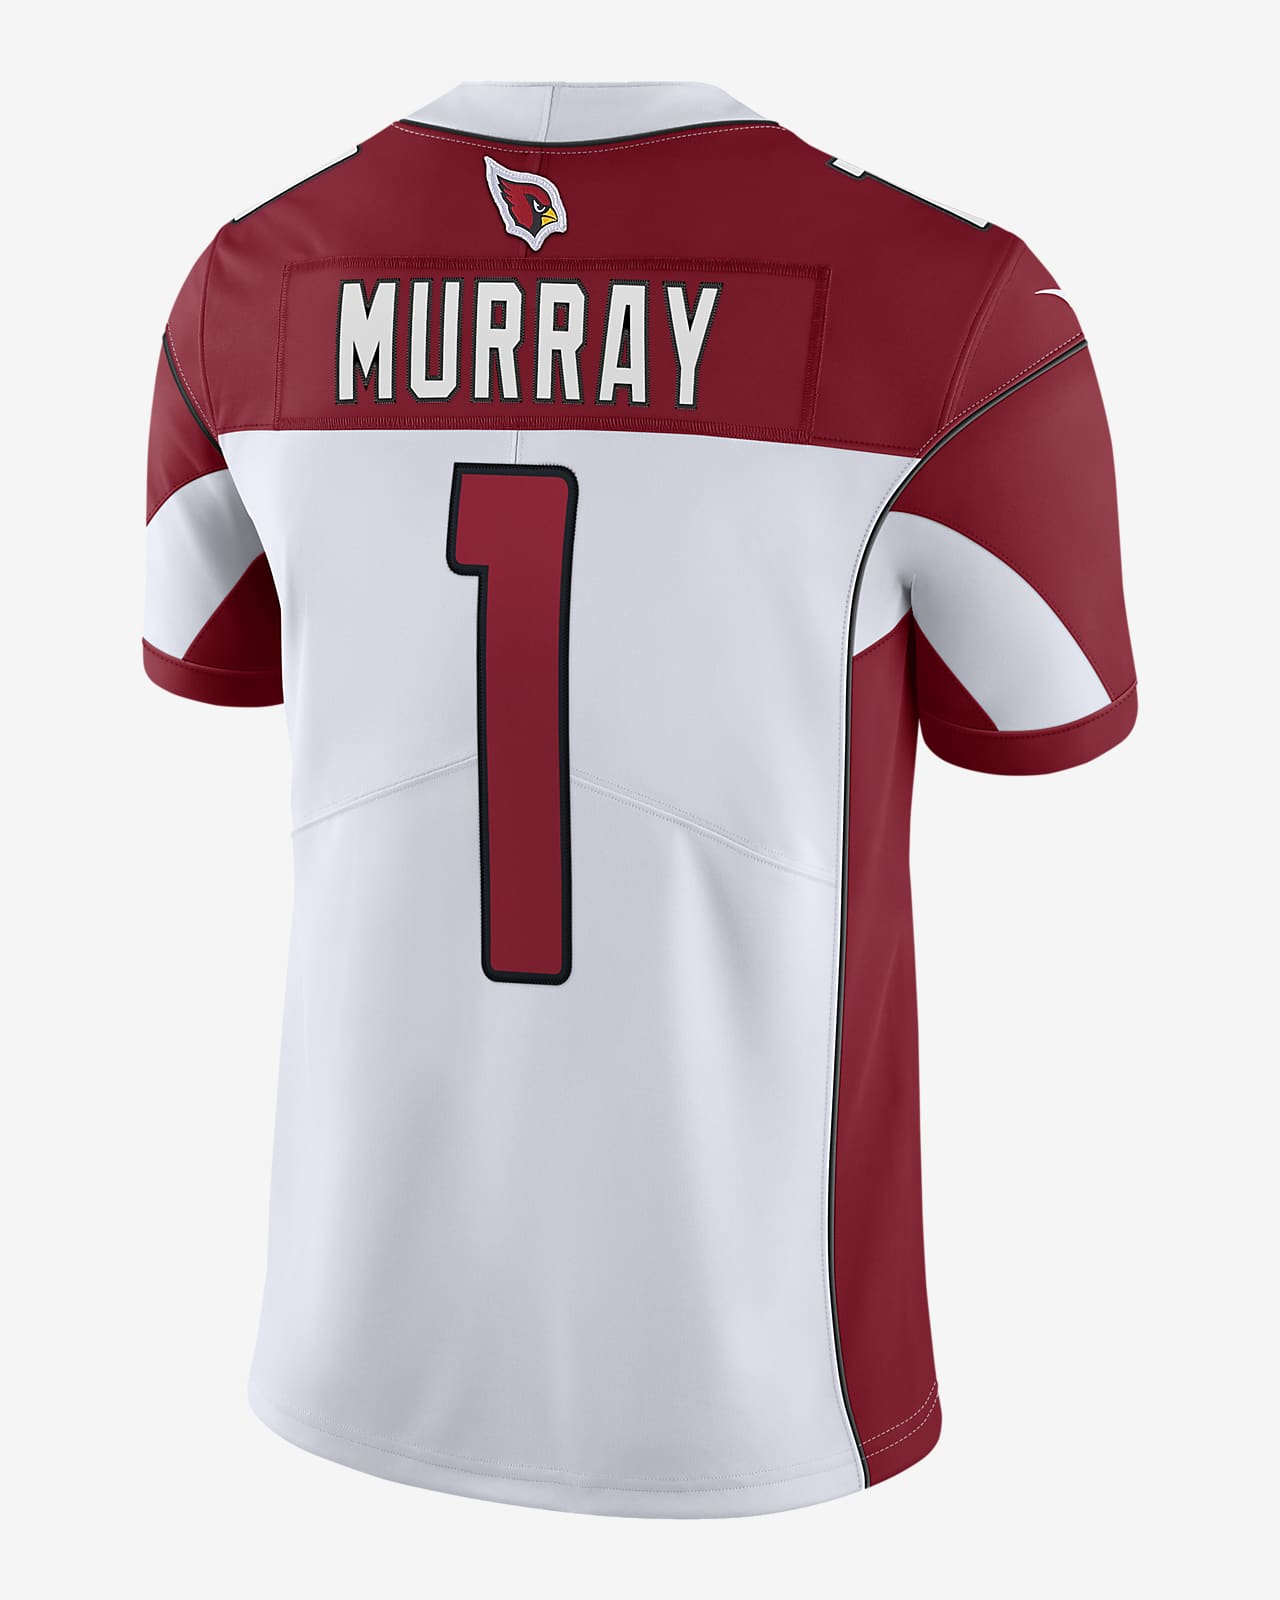 Jersey de fútbol americano edición limitada para hombre NFL Arizona Cardinals Nike Untouchable (Kyler Murray). Nike.com